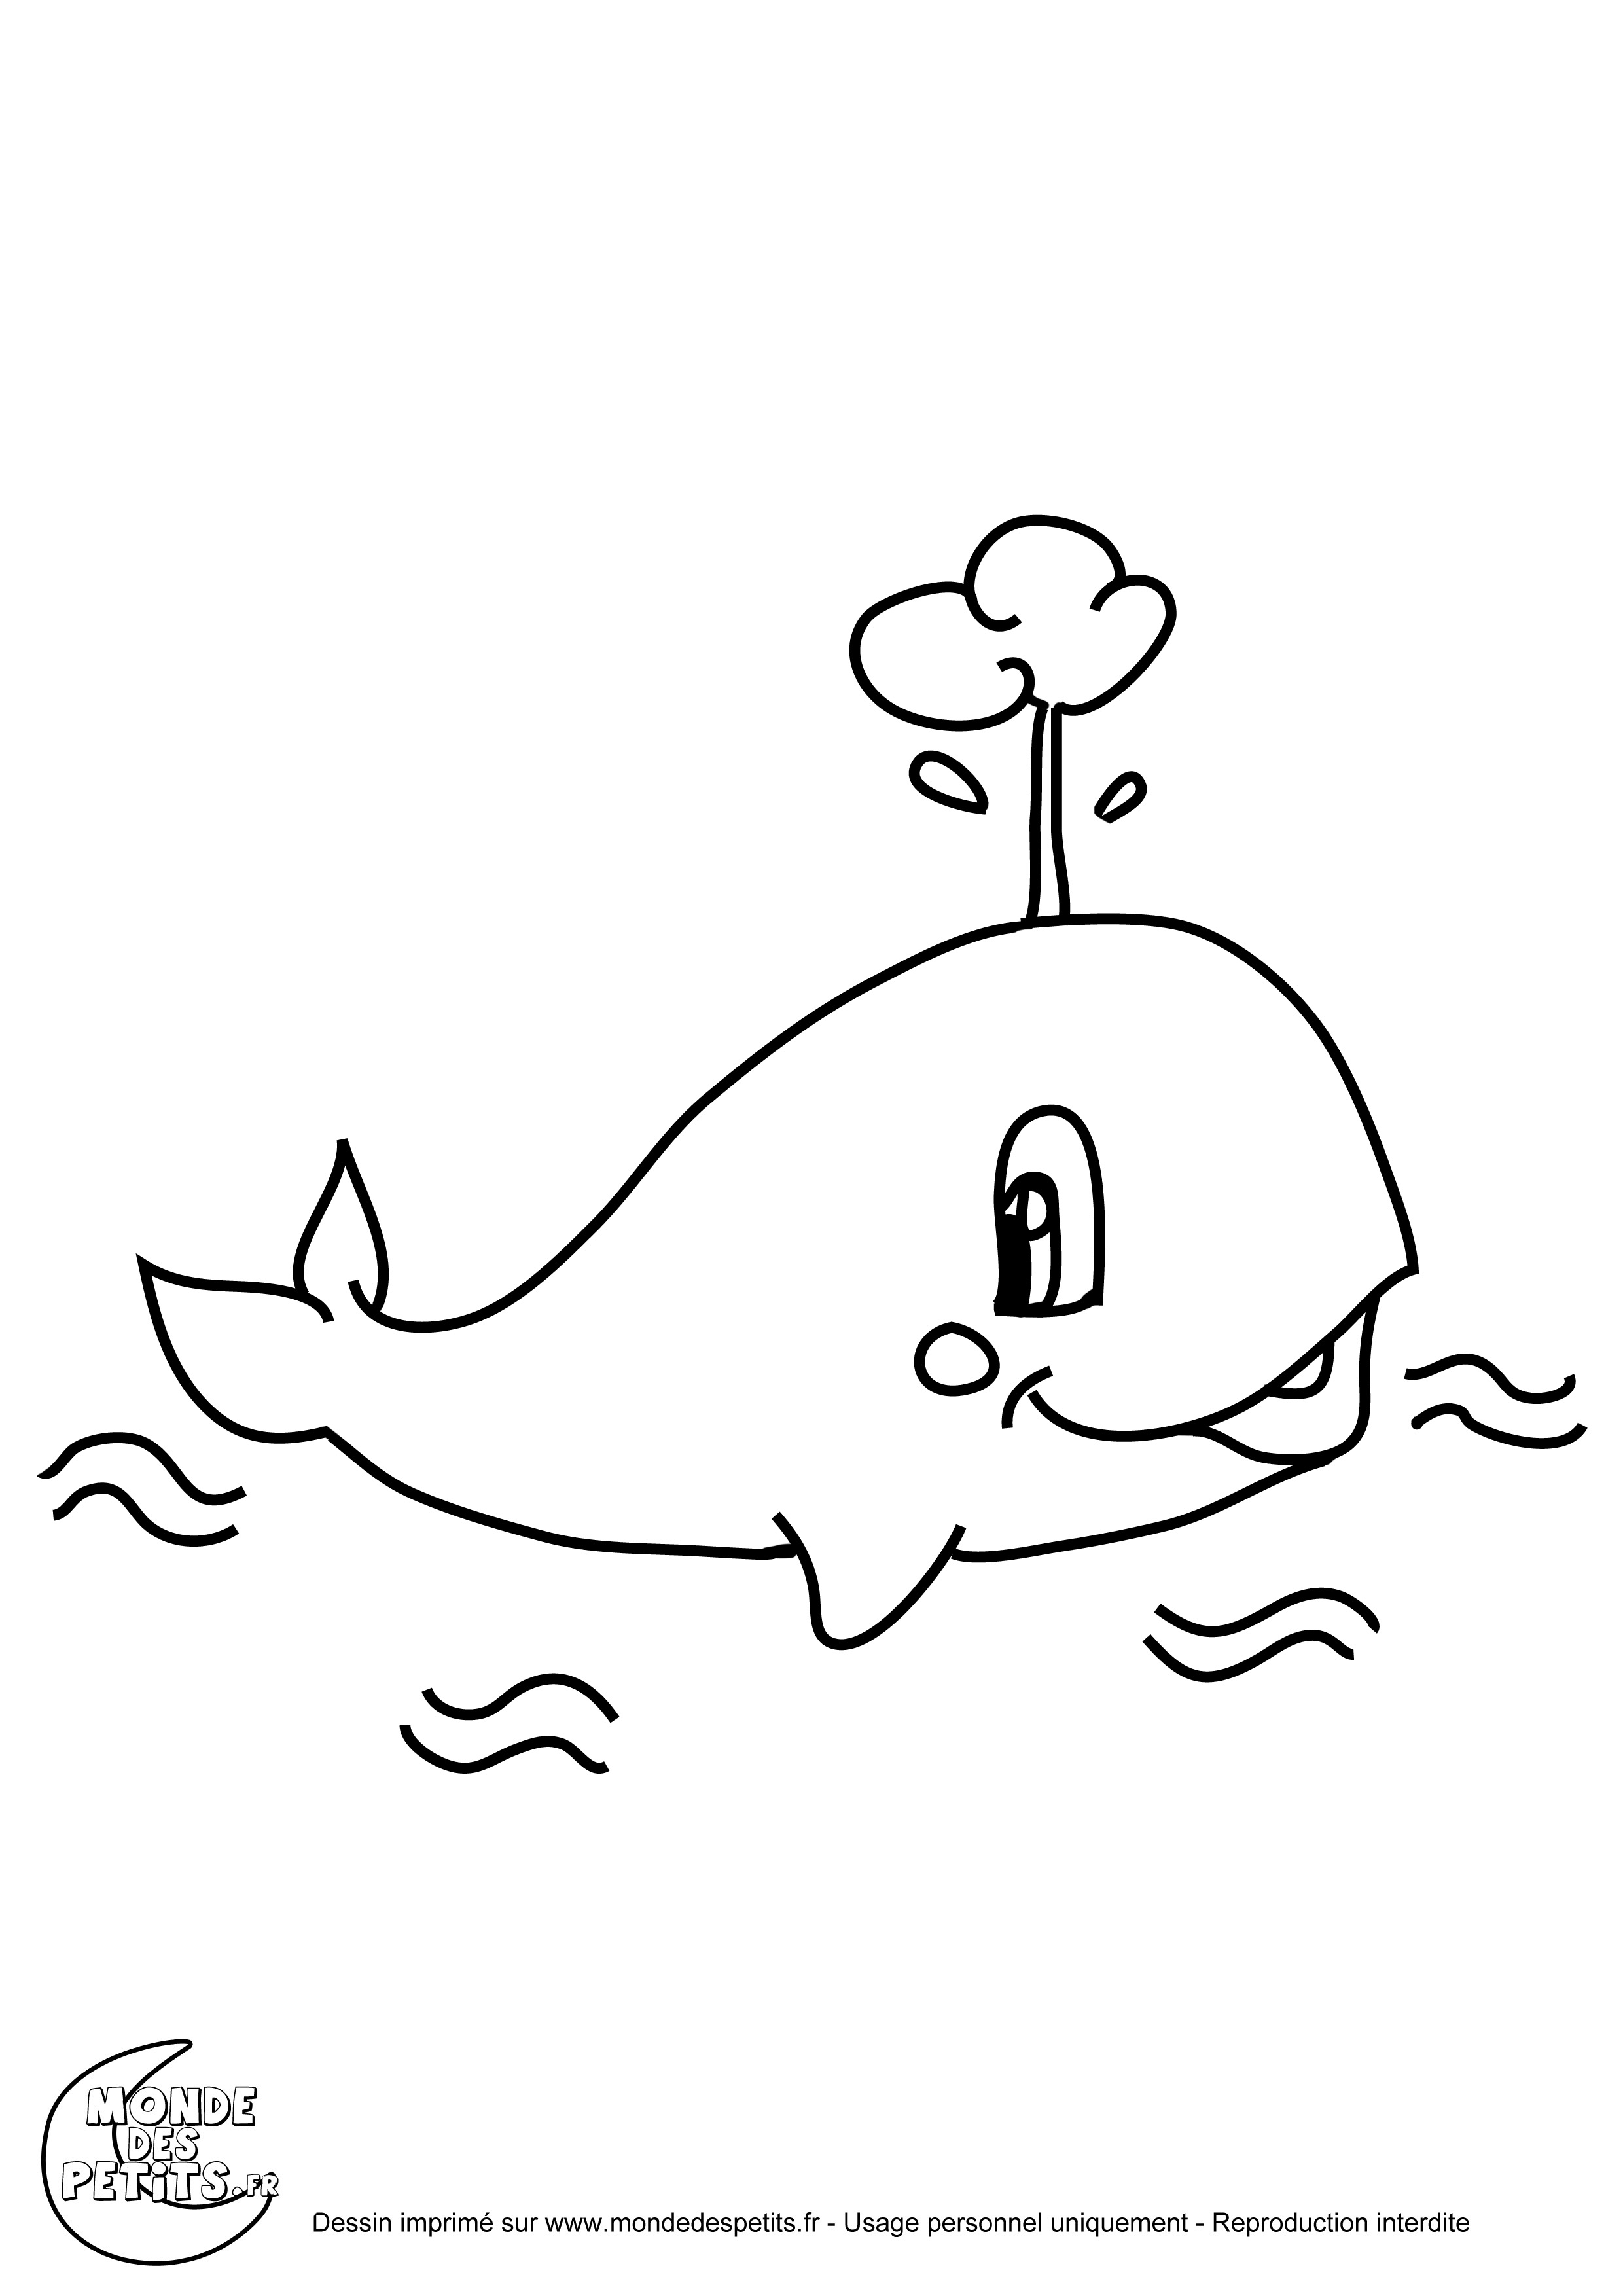 Раскраска: кит (Животные) #939 - Бесплатные раскраски для печати